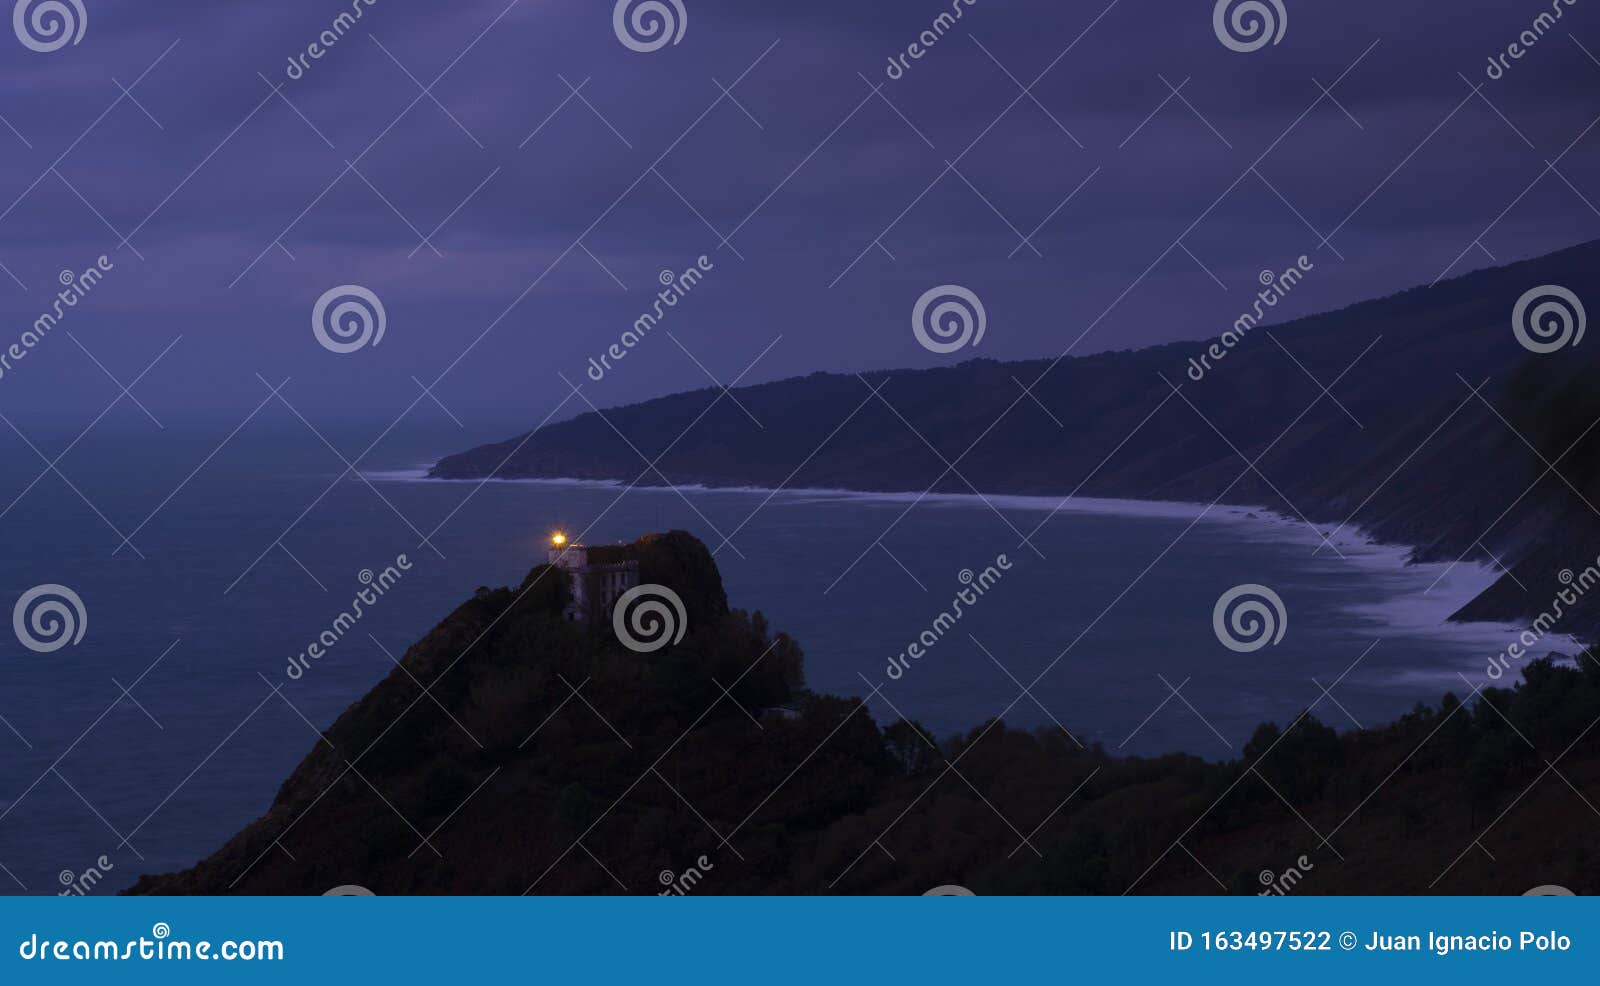 la plata lighthouse on mount ulia at dusk, in pasaia, euskadi